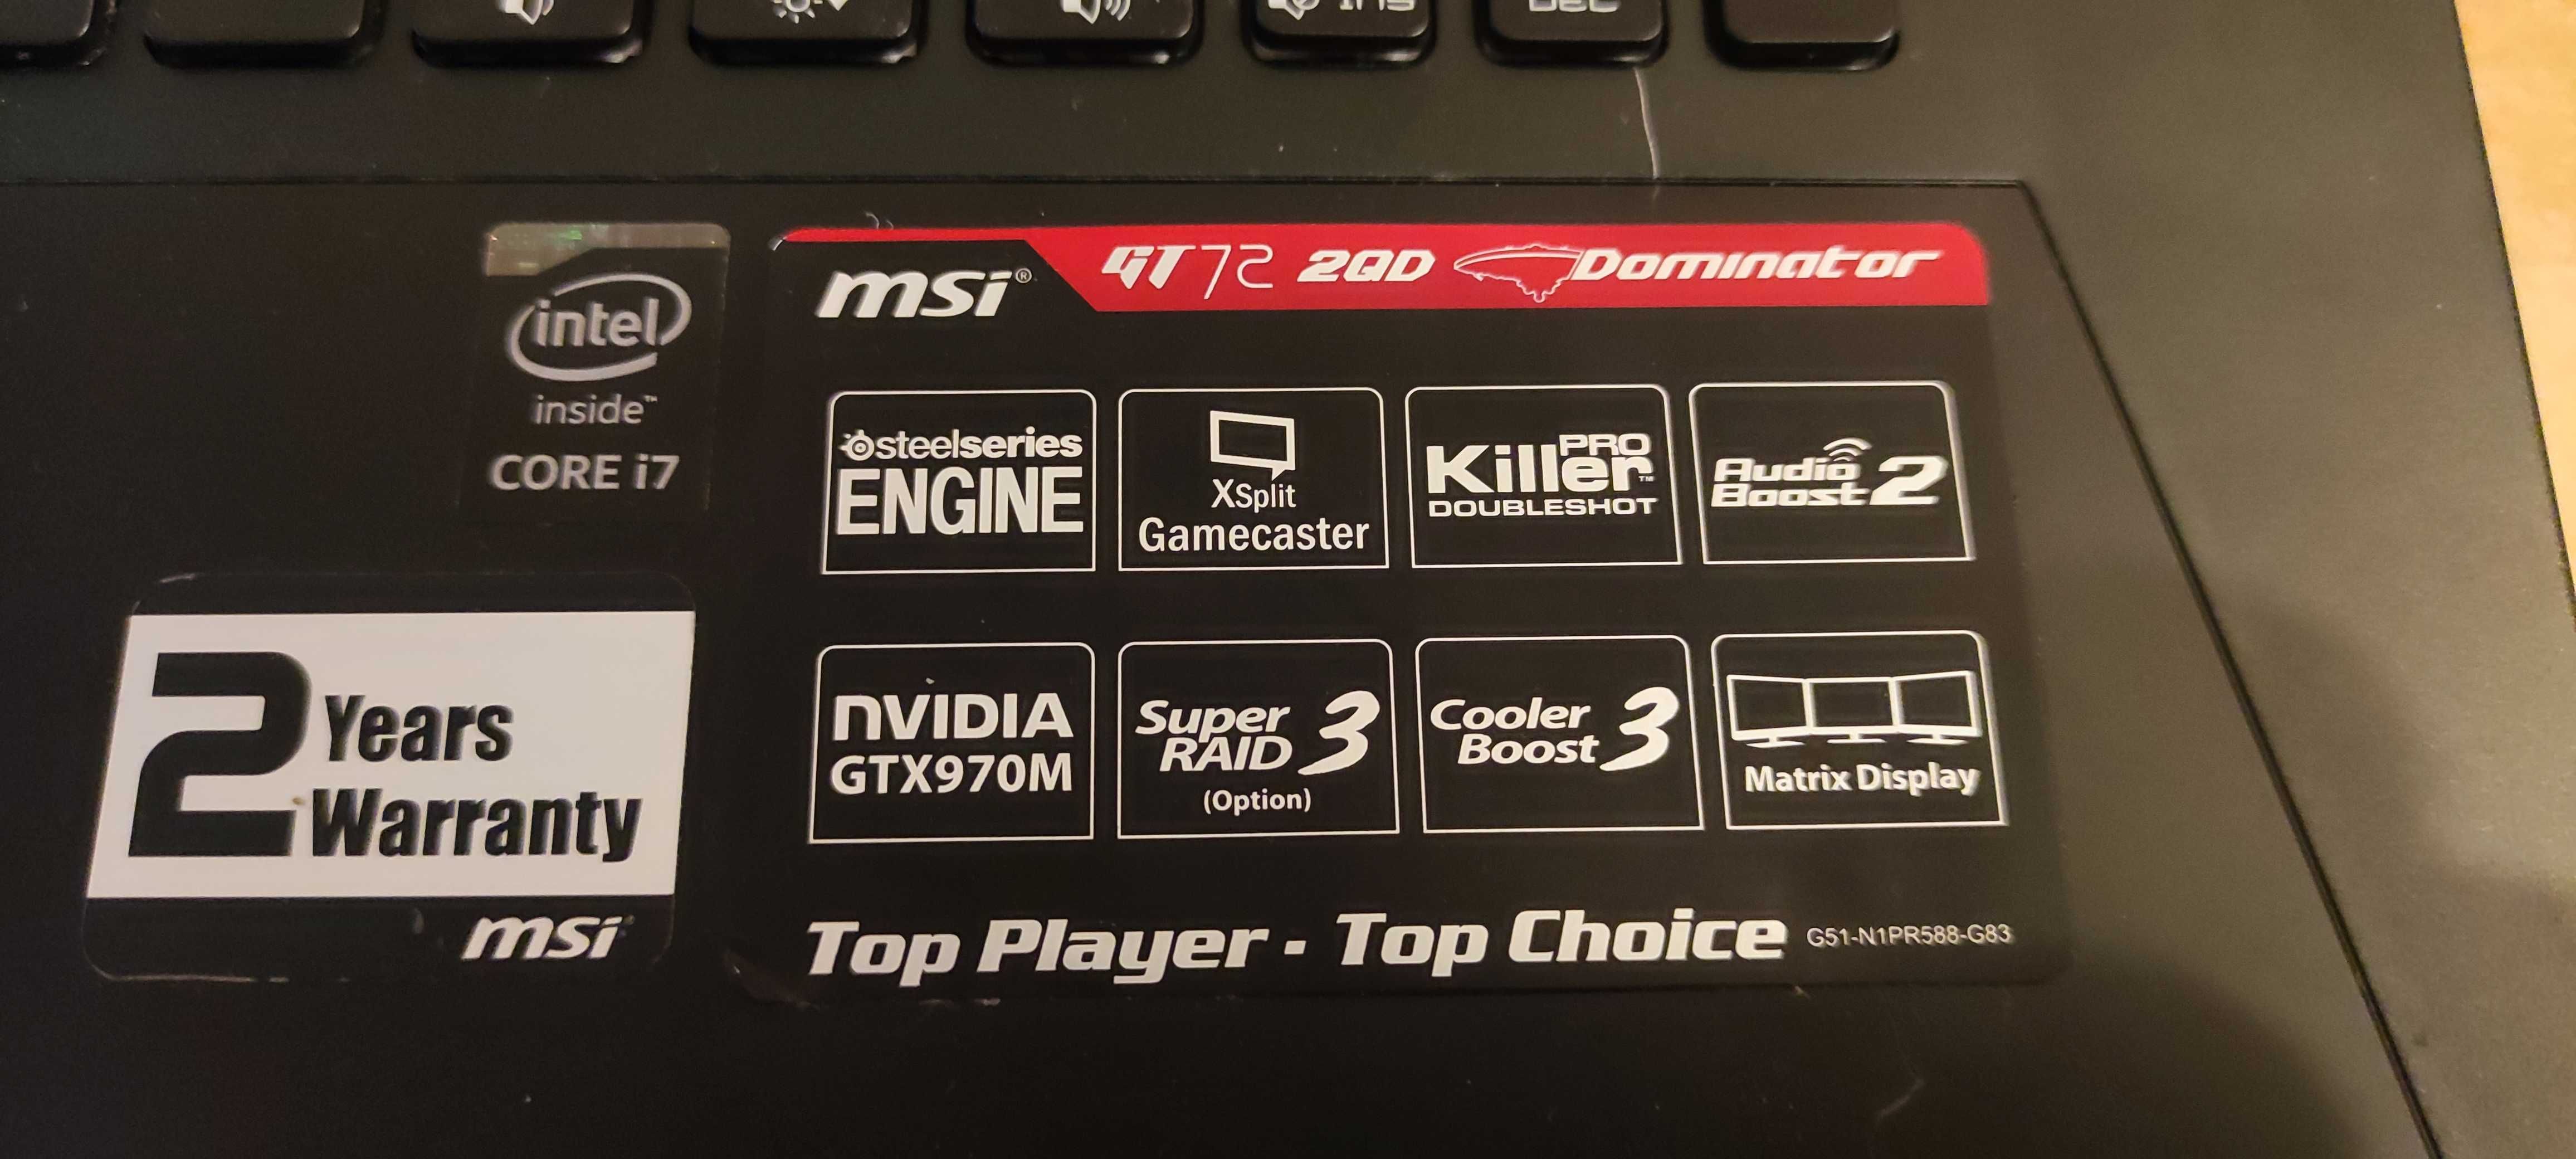 Laptop MSI GT72 2QD Dominator uszkodzony